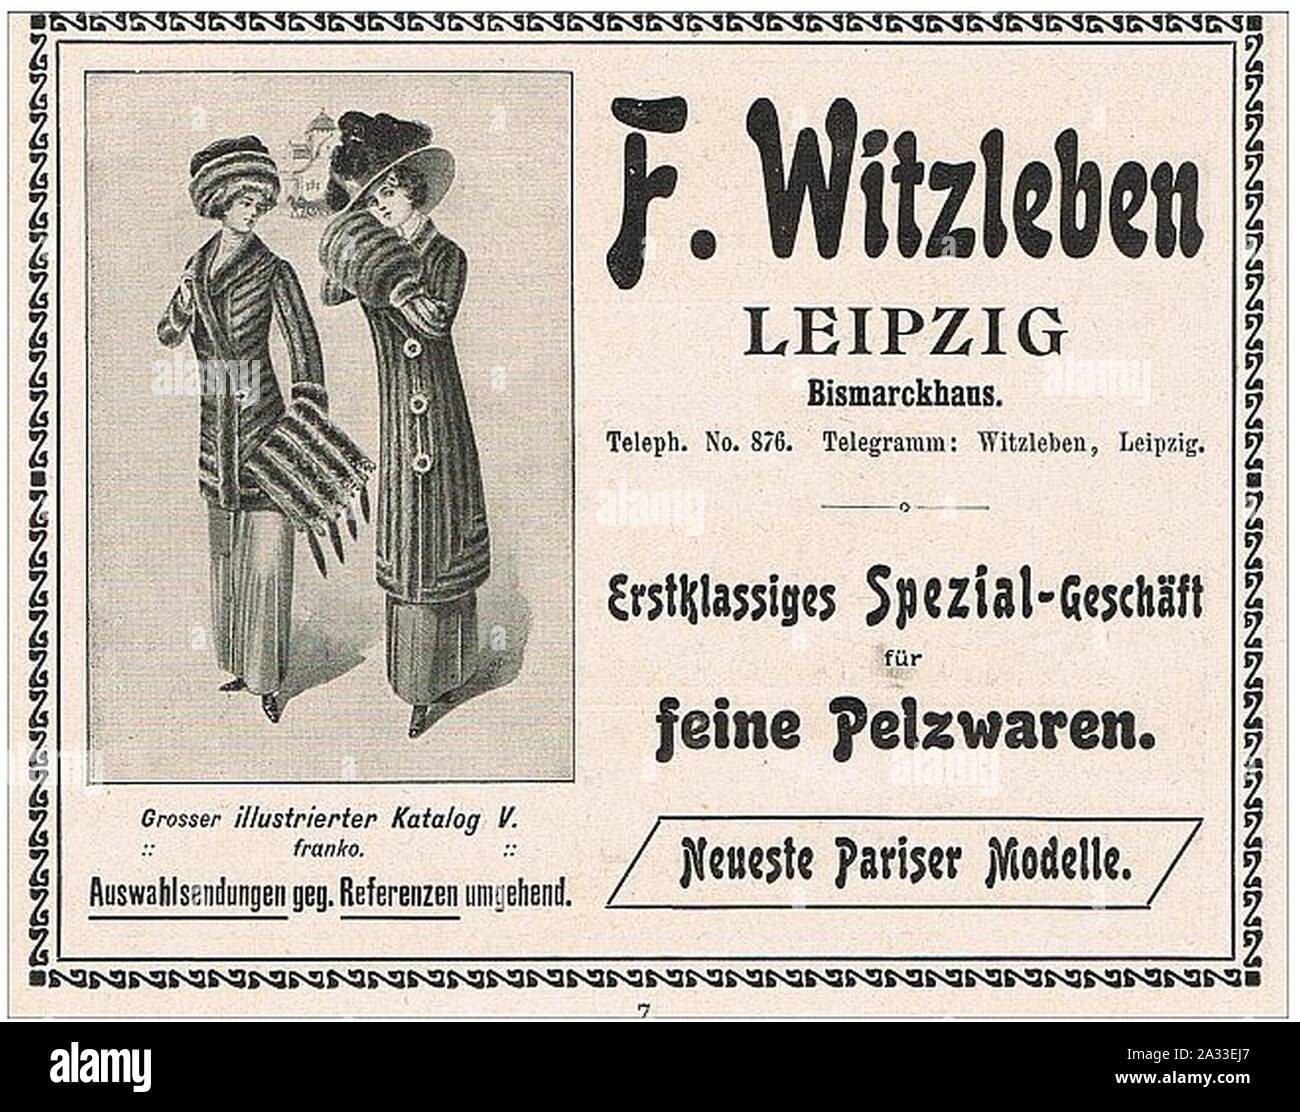 F. Witzleben Leipzig Spezial-Geschäft für Pelzwaren Anzeige 1910. Stock Photo